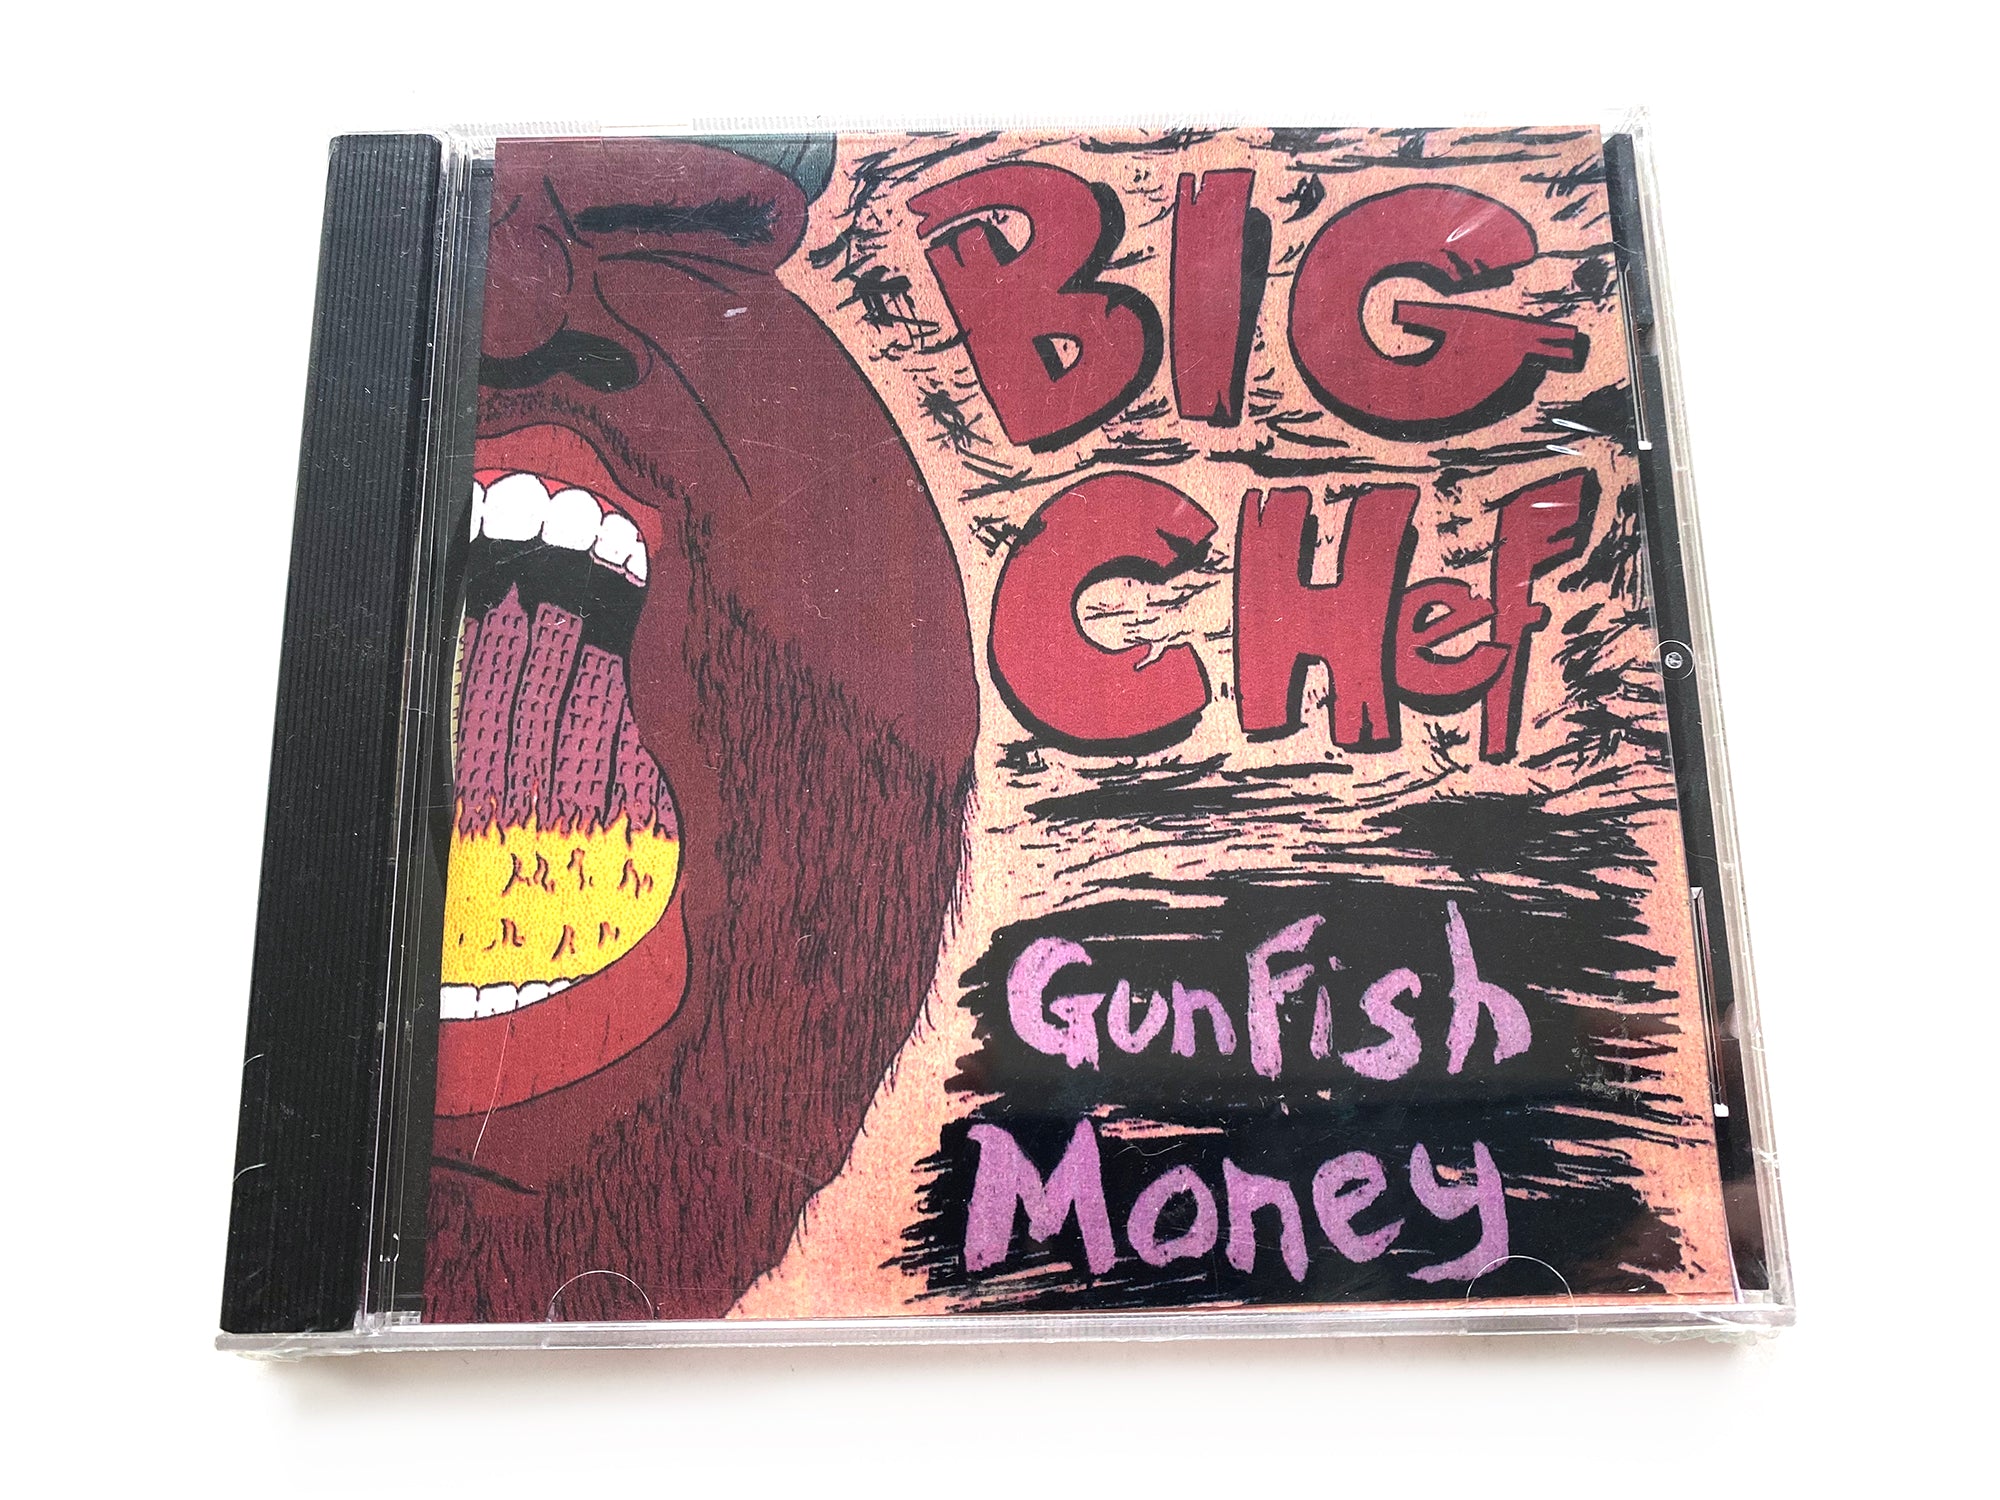 GunFishMoney - Big Chef